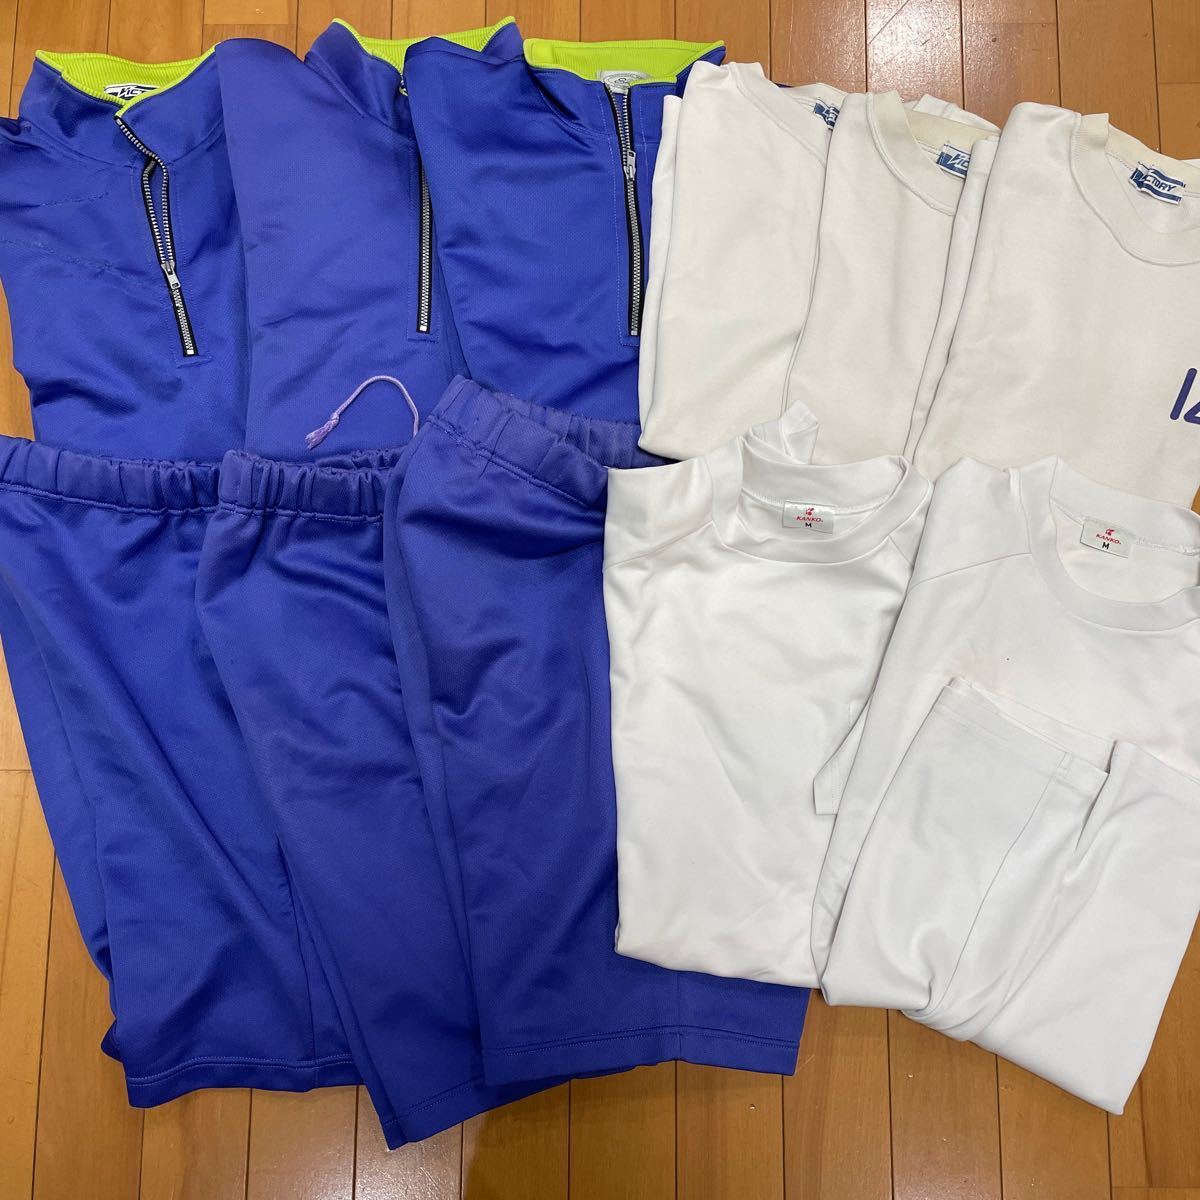 4 9 コスプレ衣装 VICTORY KANKO ジャージ ハーフパンツ スポーツシャツ 中学_画像1